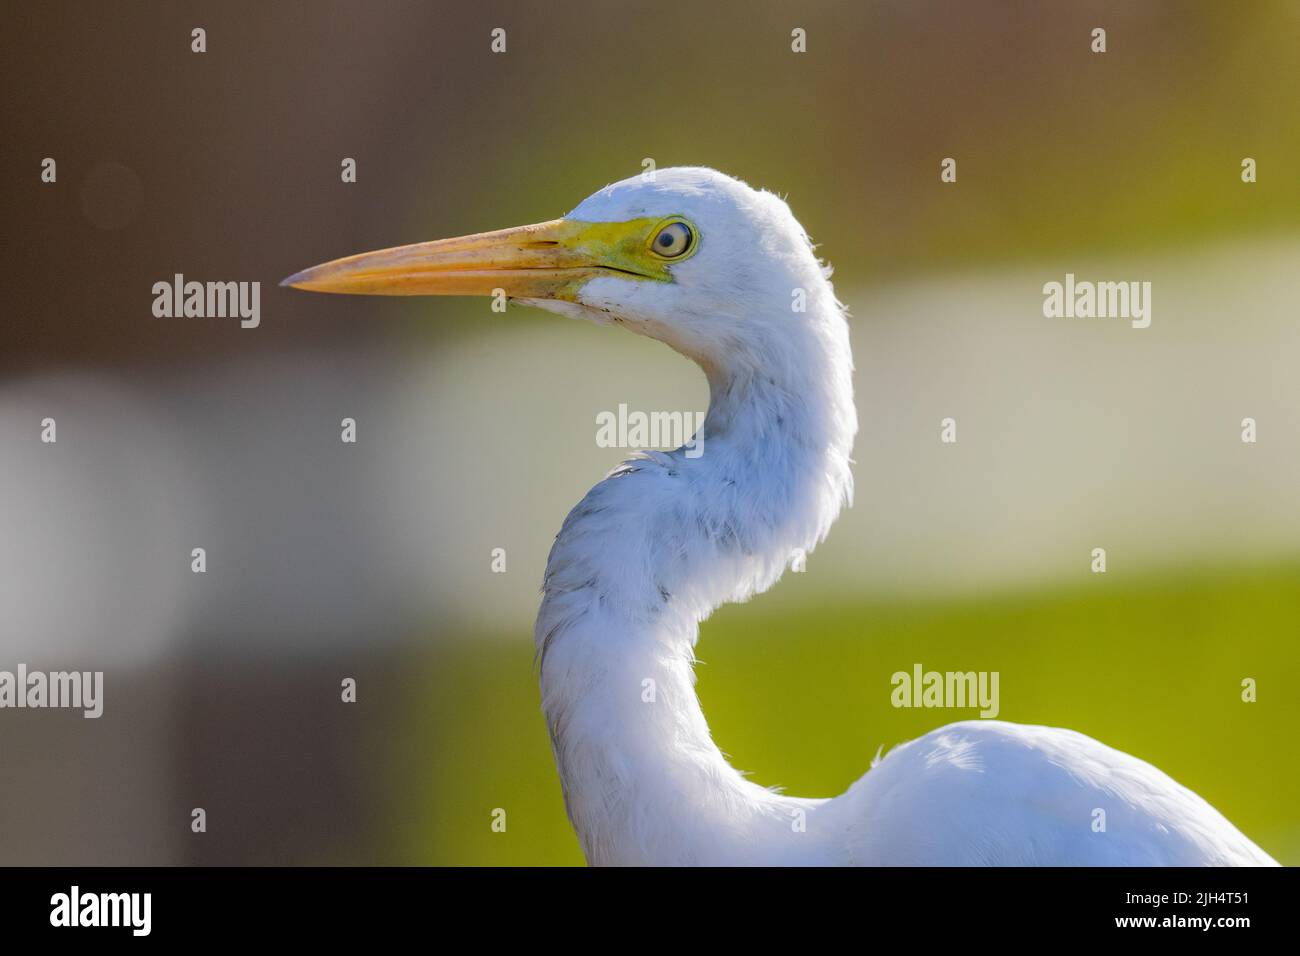 Intermediate Egret, Edian egret, Smaller egret, Yellow-billed egret (Ardea intermedia), portrait, Australia, Northern Territory, Fogg Dam Stock Photo